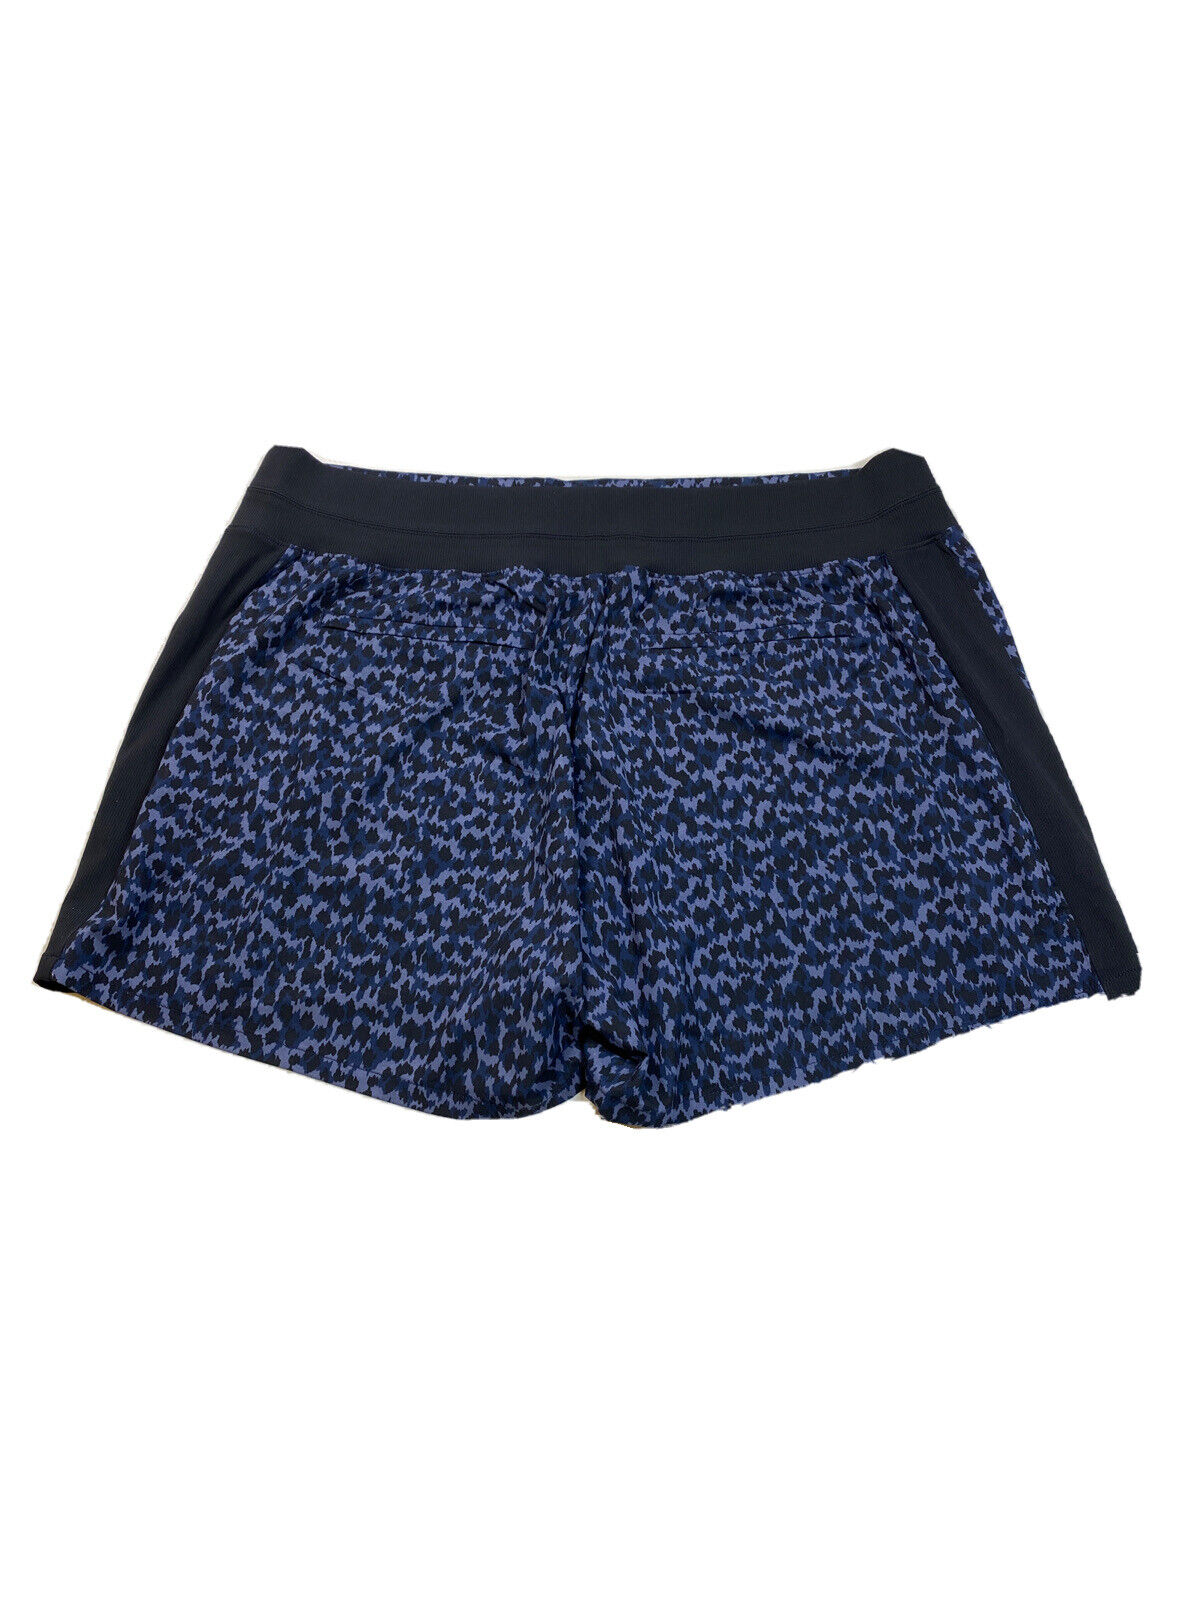 NUEVOS pantalones cortos atléticos Brooklyn con estampado geométrico azul Athleta para mujer - 18